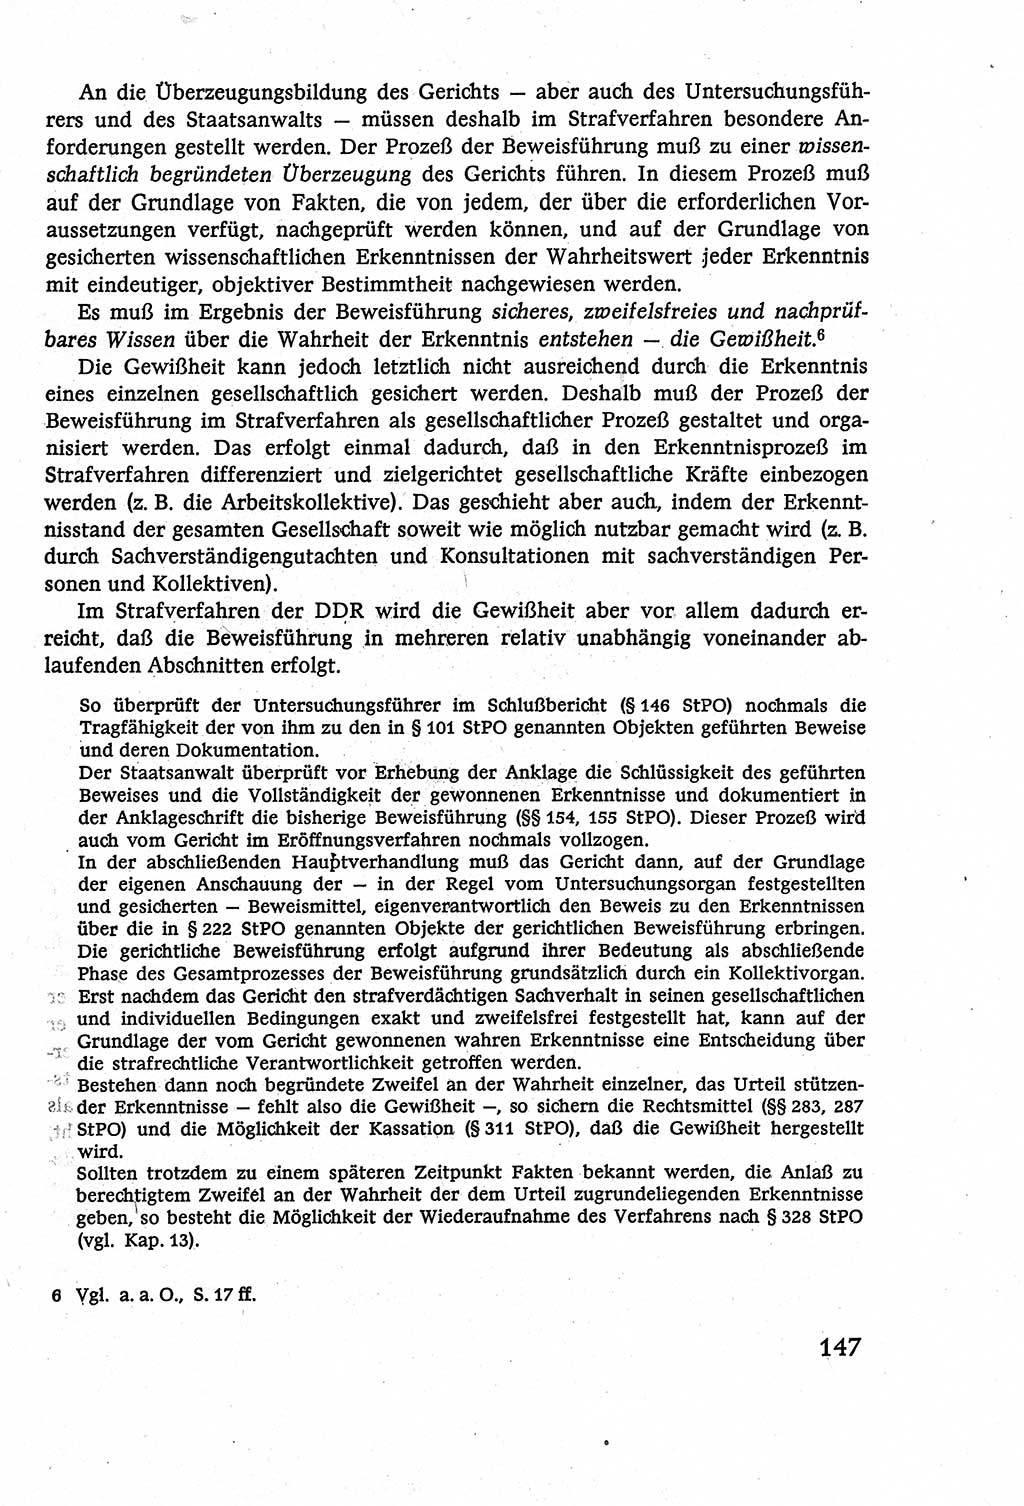 Strafverfahrensrecht [Deutsche Demokratische Republik (DDR)], Lehrbuch 1977, Seite 147 (Strafverf.-R. DDR Lb. 1977, S. 147)